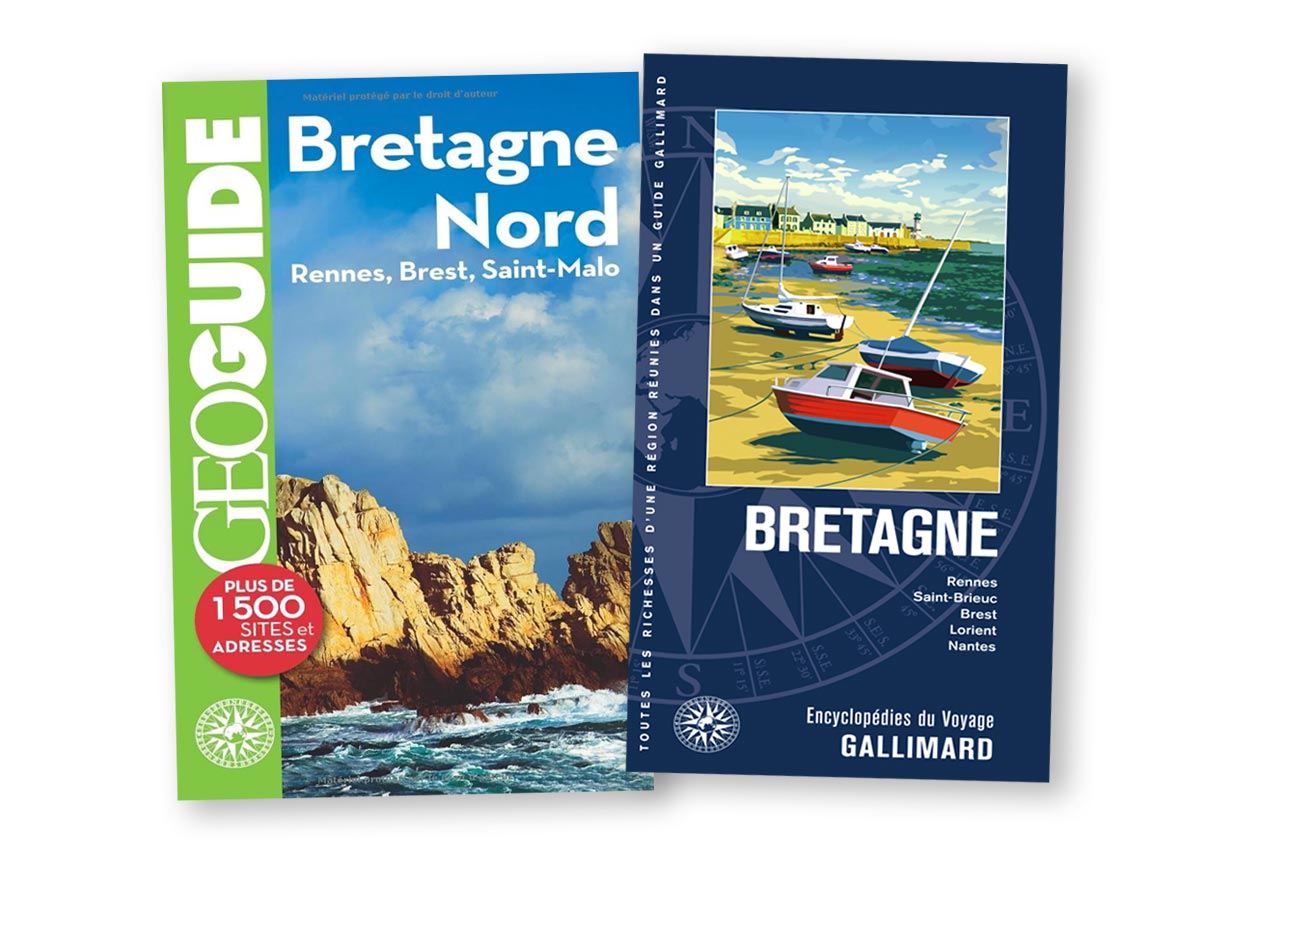 Guide Gallimard et Géo guide Bretagne